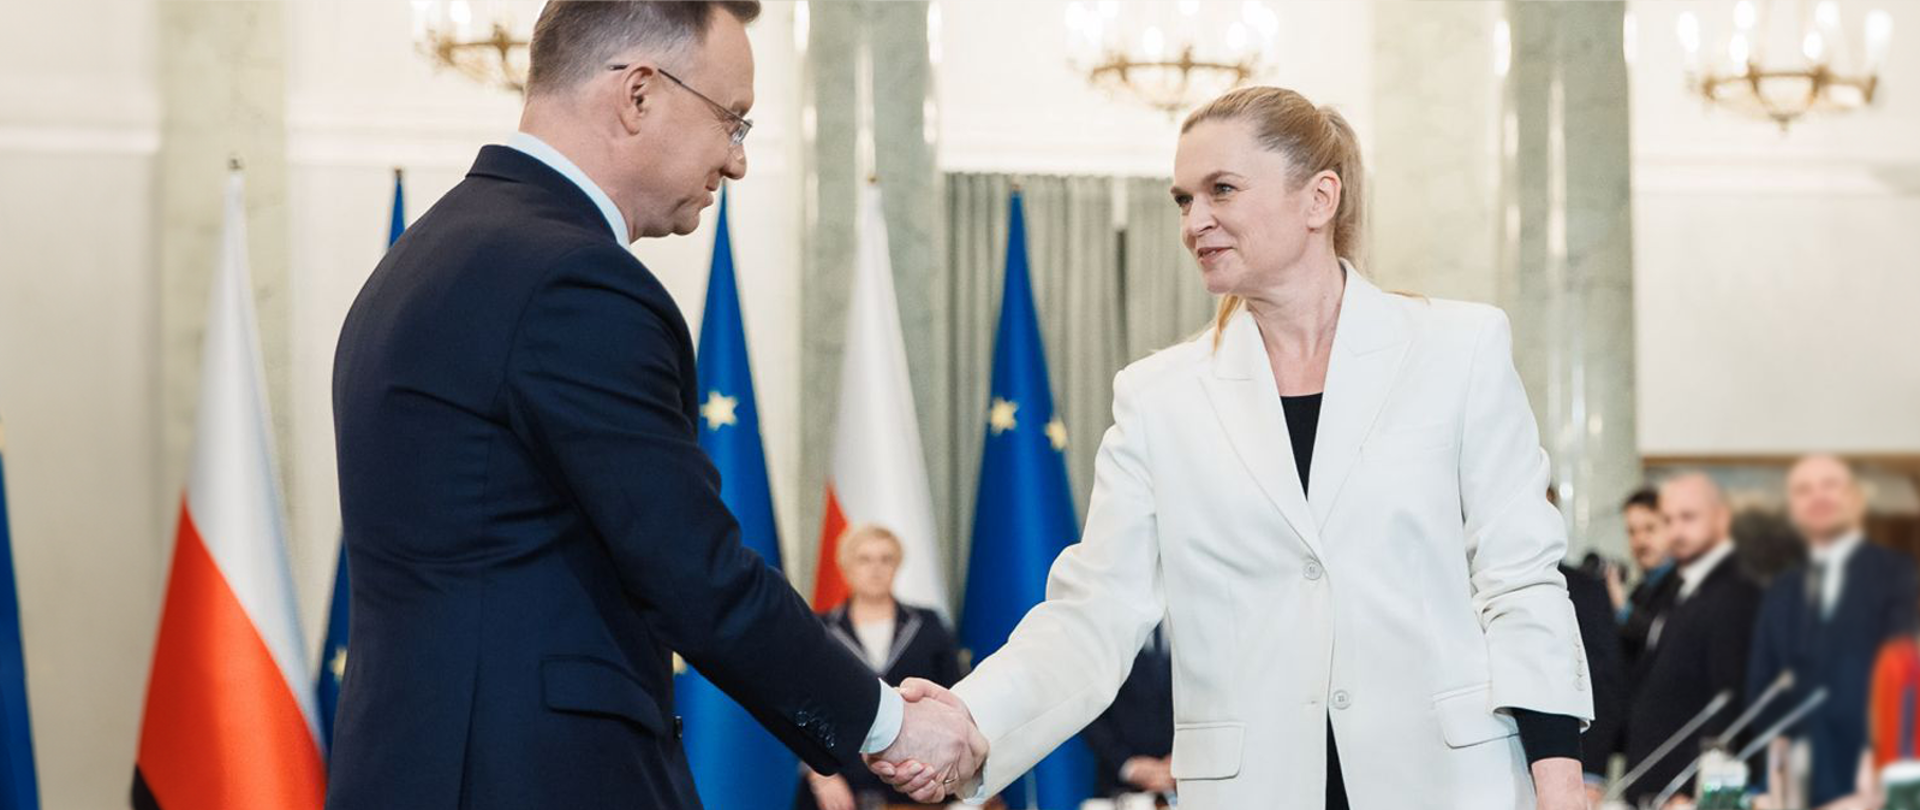 Minister Nowacka ubrana w białą marynarkę podaje rękę Prezydentowi Andrzejowi Dudzie. W tle widok sali, której obradowała Rada Gabinetowa.